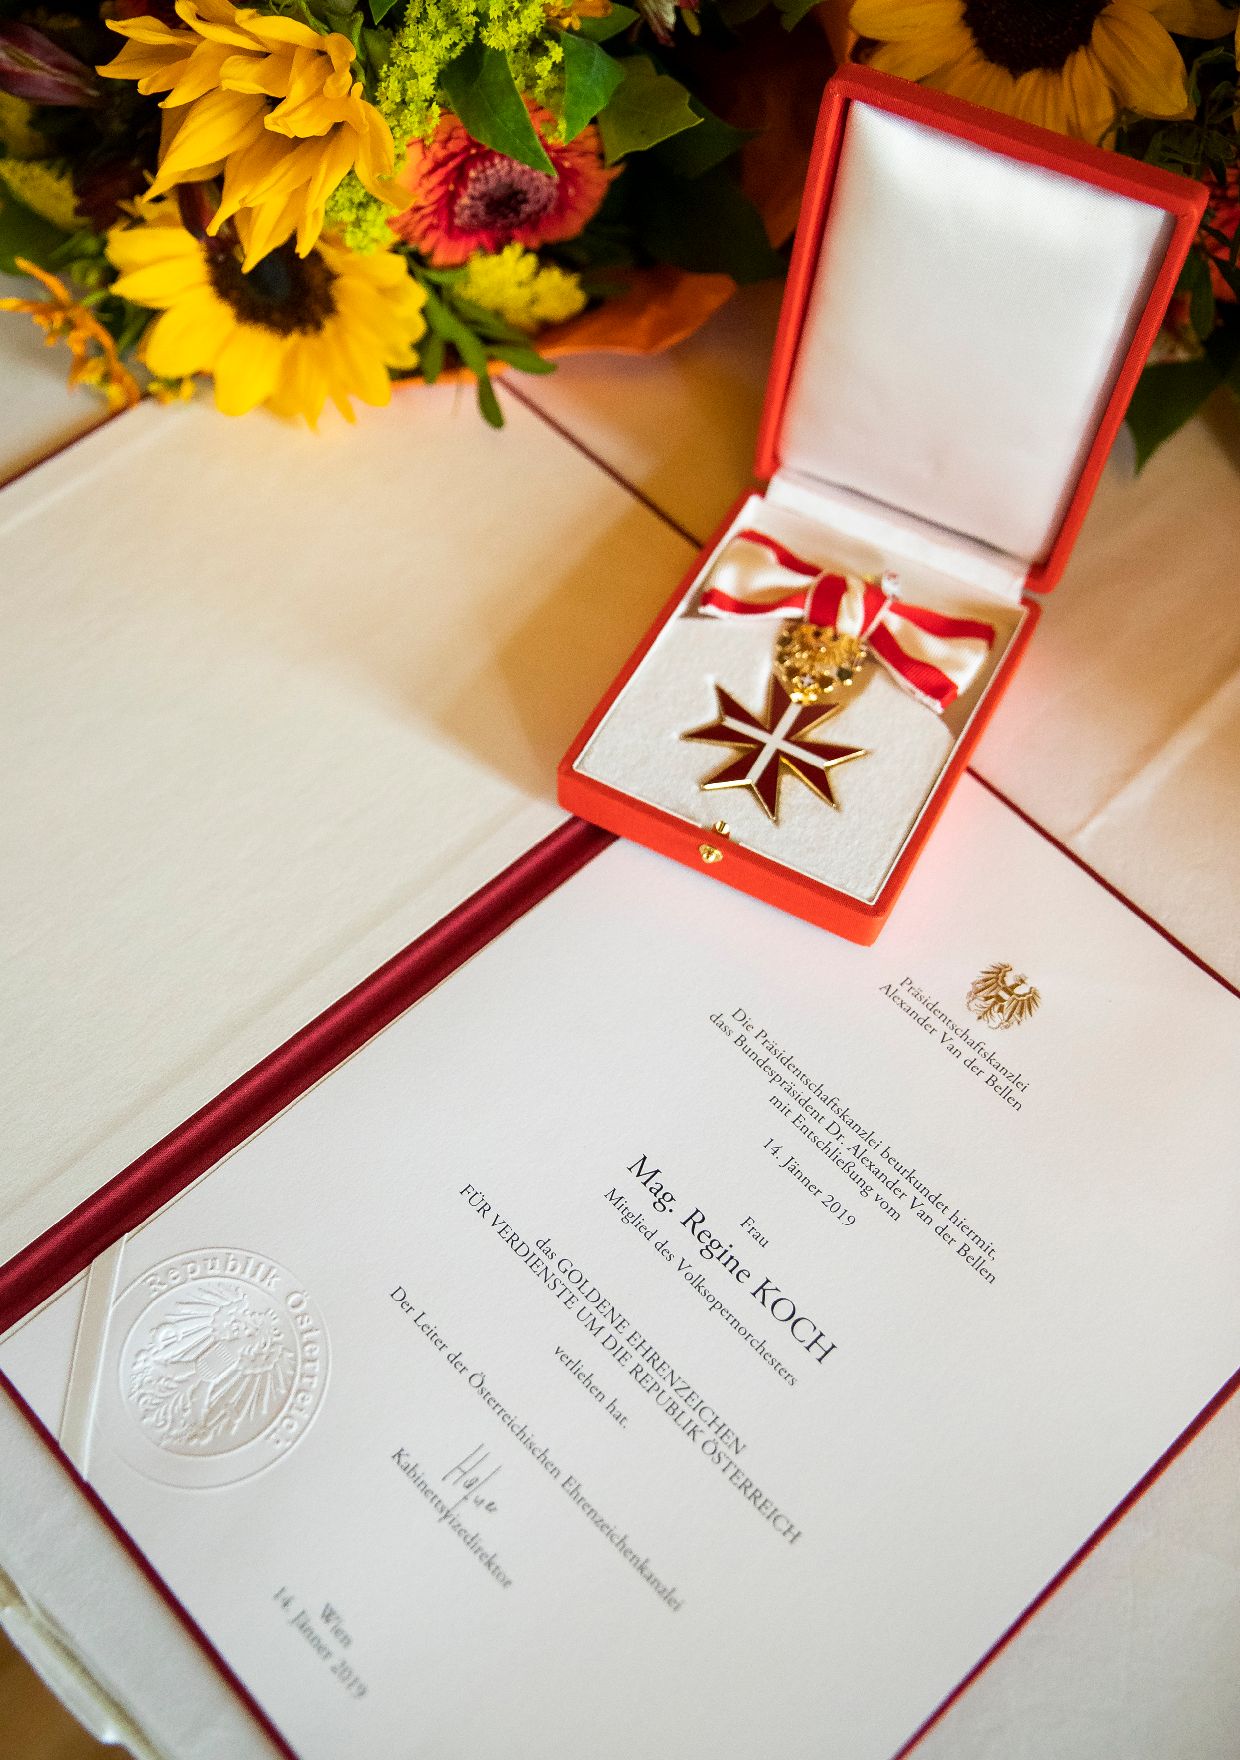 Am 24. Juni 2019 überreichte Sektionschef Jürgen Meindl das Goldene Ehrenzeichen für Verdienste um die Republik Österreich an Regine Koch und die Urkunden, mit denen Josef Bednarik, Maximilian Feyertag und Michael Zottl der Berufstitel Professor verliehen wurde.